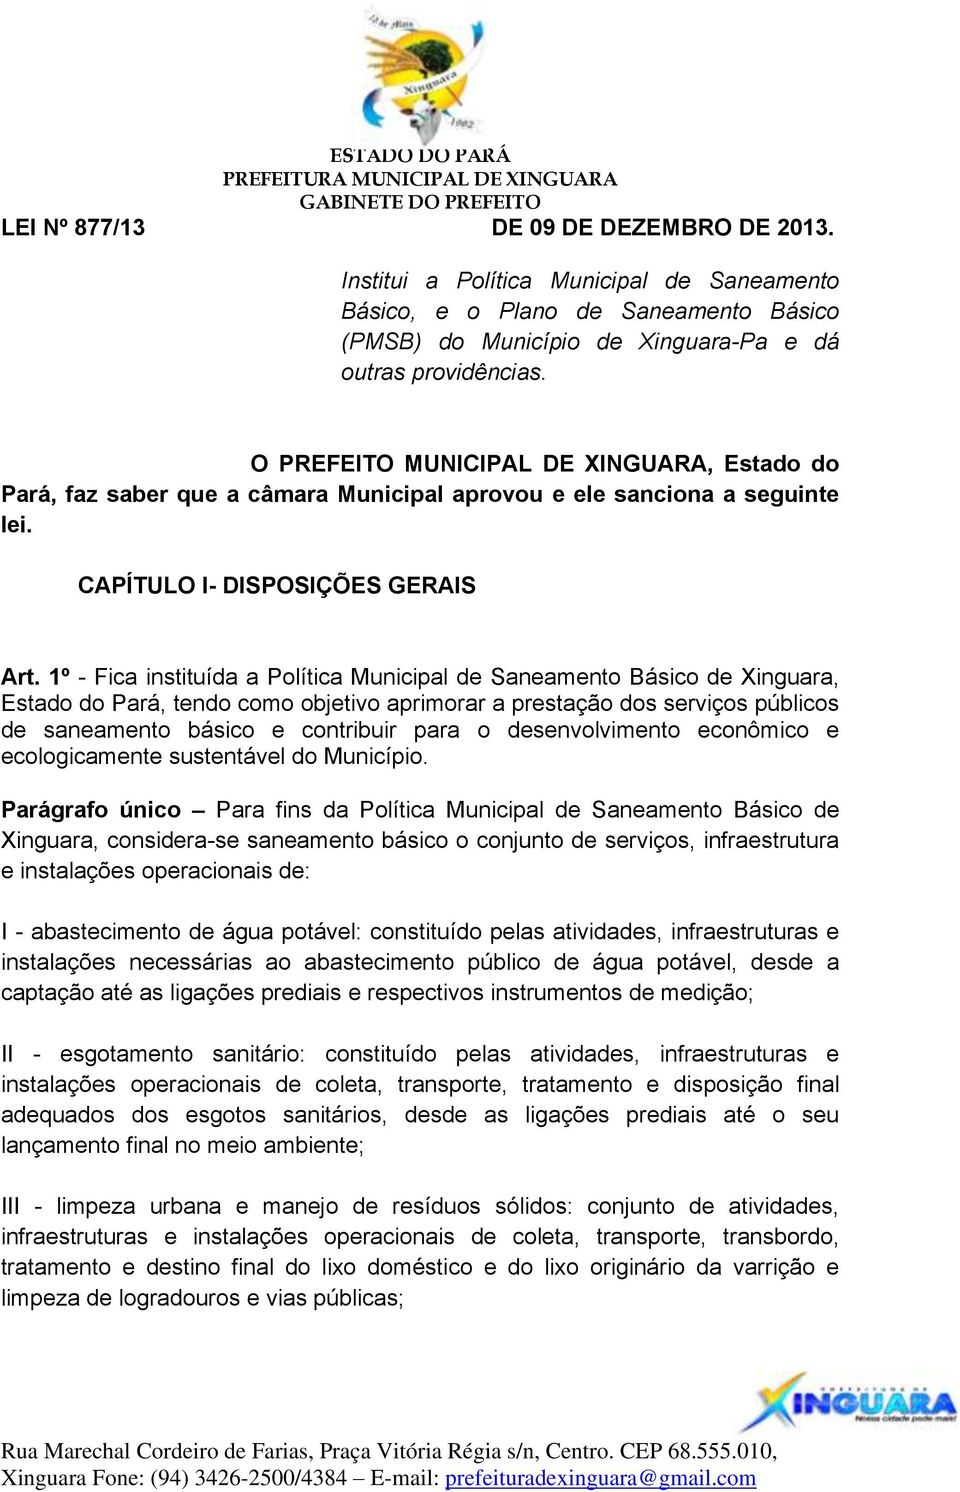 1º - Fica instituída a Política Municipal de Saneamento Básico de Xinguara, Estado do Pará, tendo como objetivo aprimorar a prestação dos serviços públicos de saneamento básico e contribuir para o